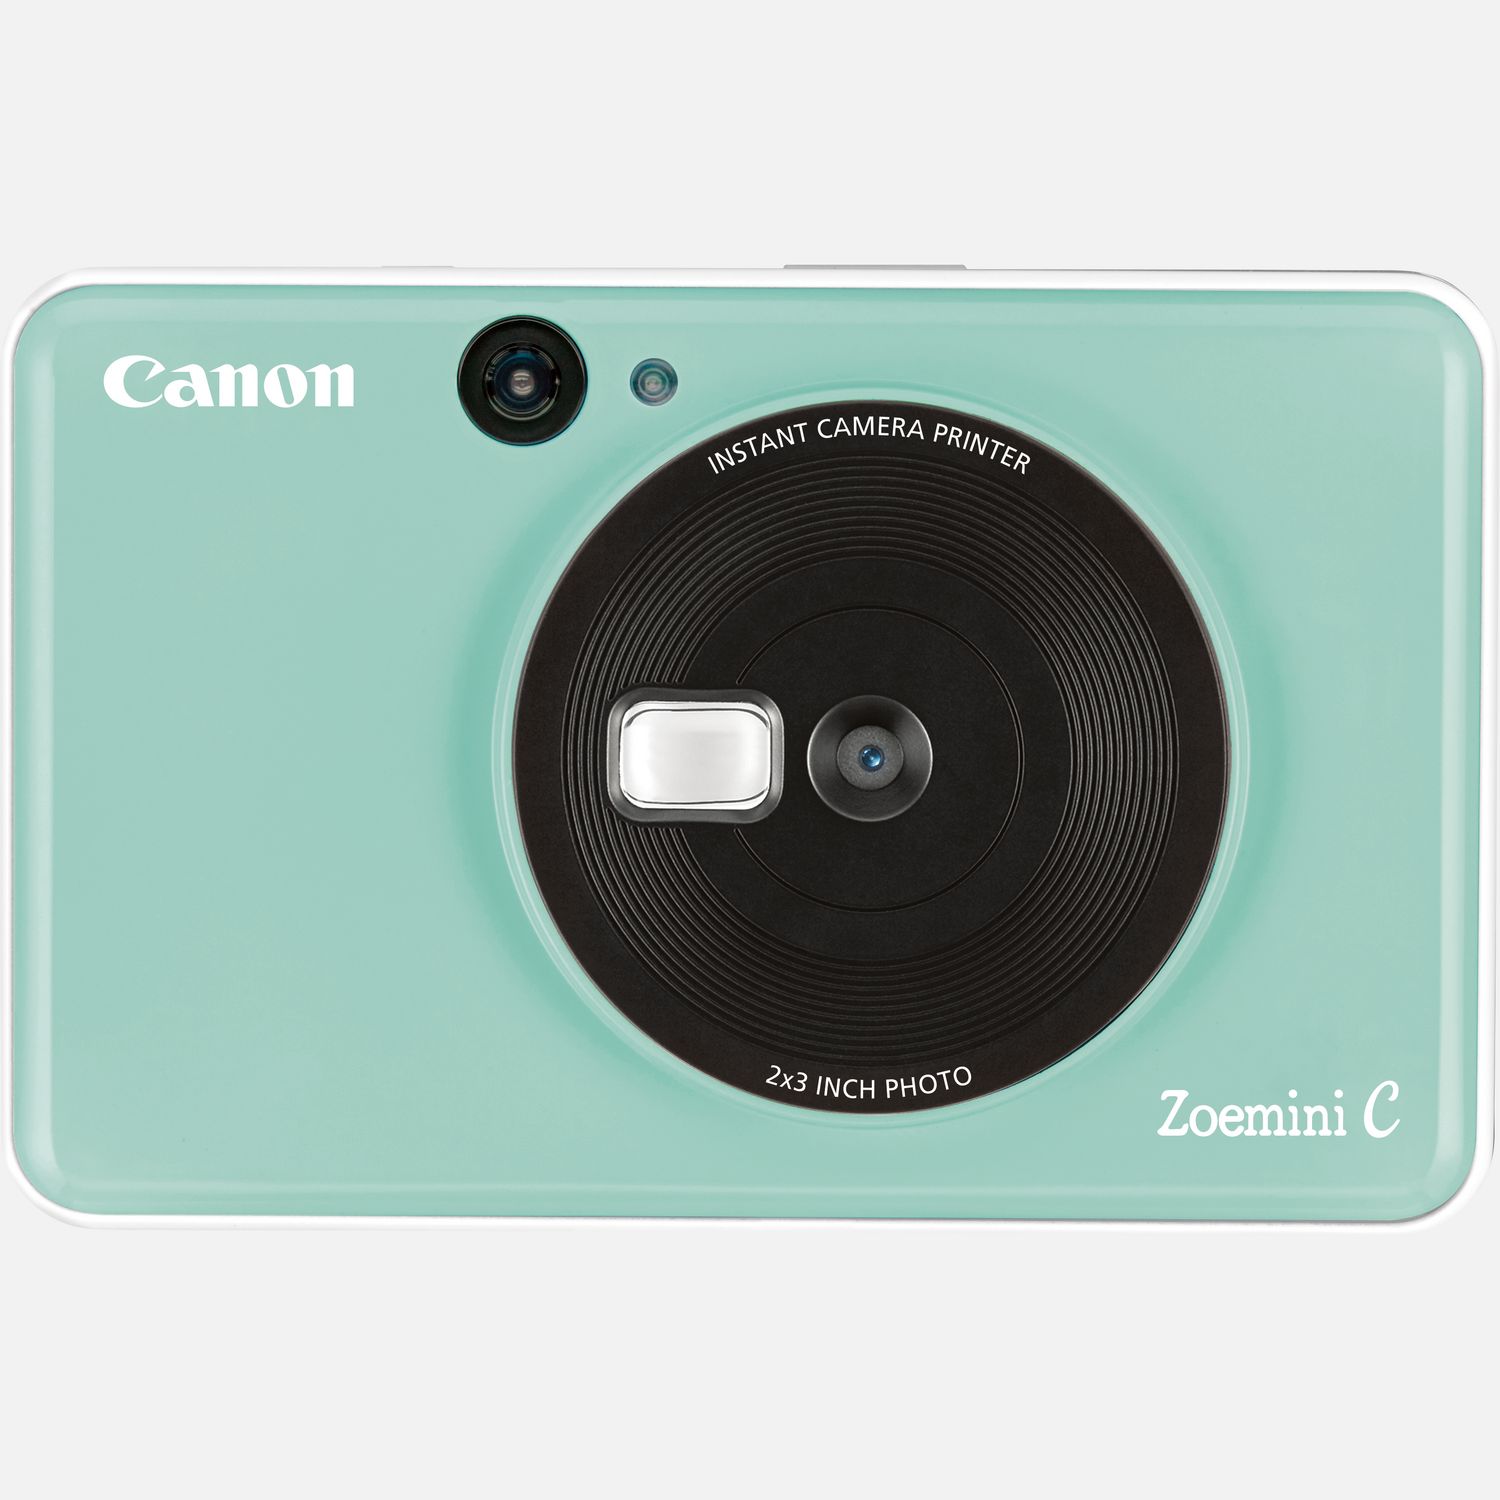 Image of Fotocamera istantanea Canon Zoemini C, Mint Green